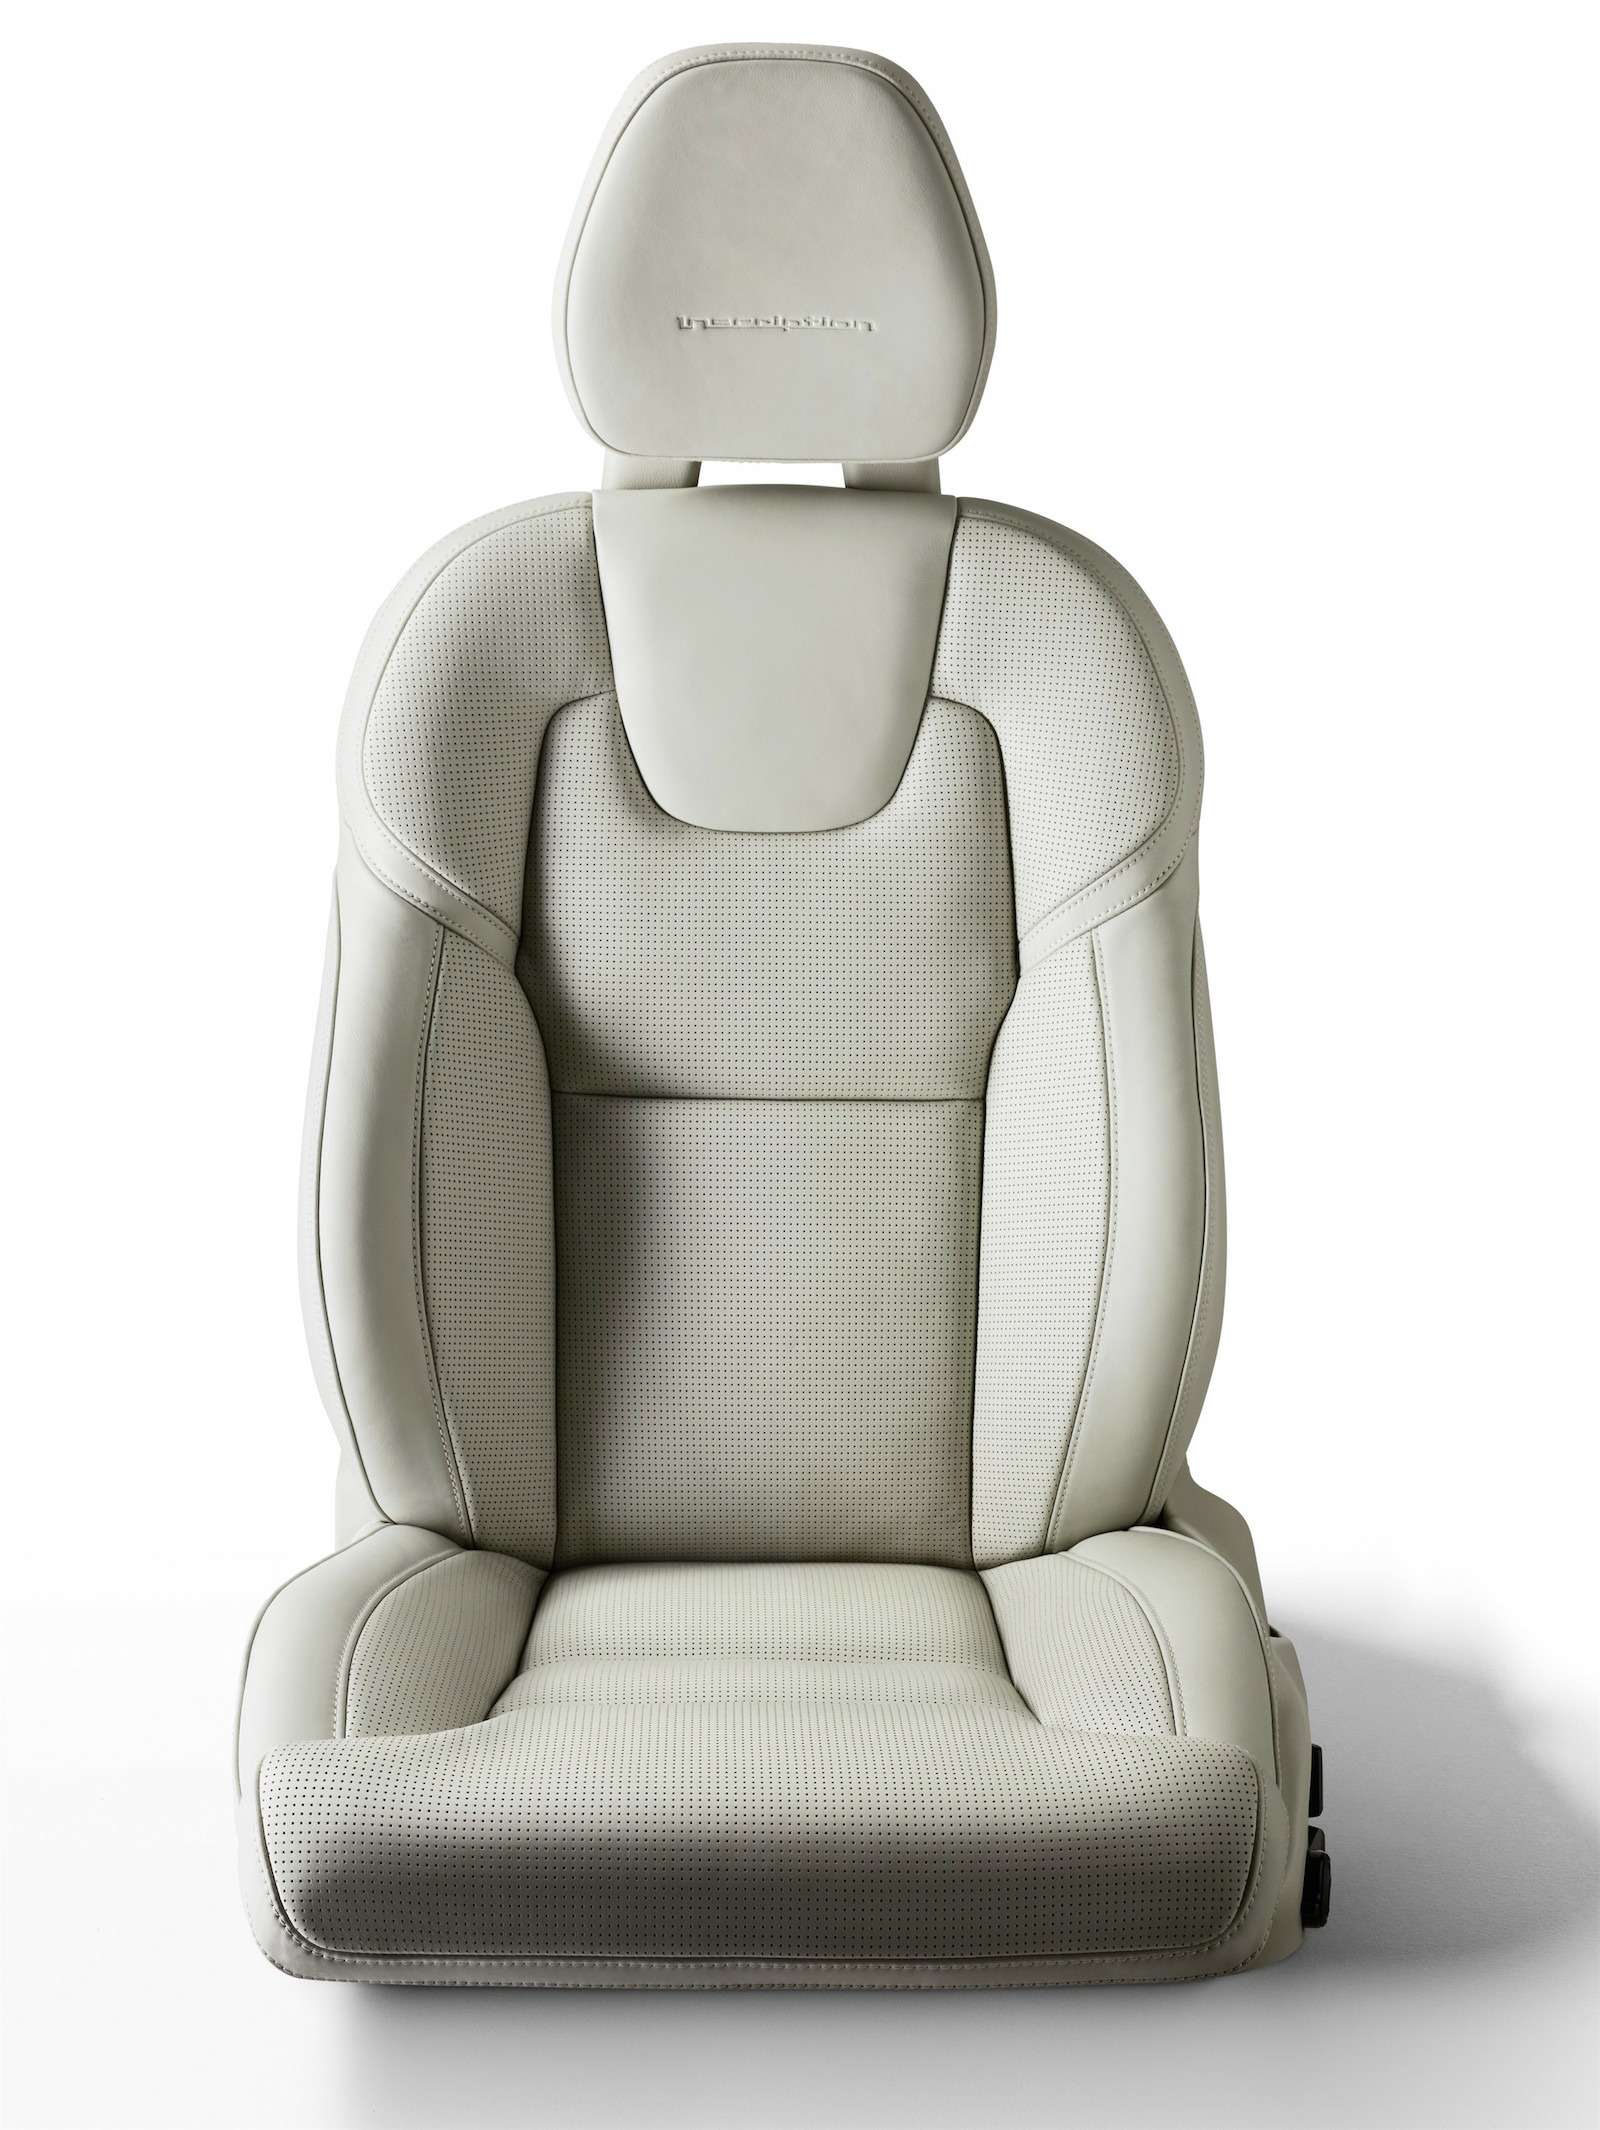 Регулировок у сидений Volvo S90 масса — можно даже скорректировать боковую поддержку спинок.